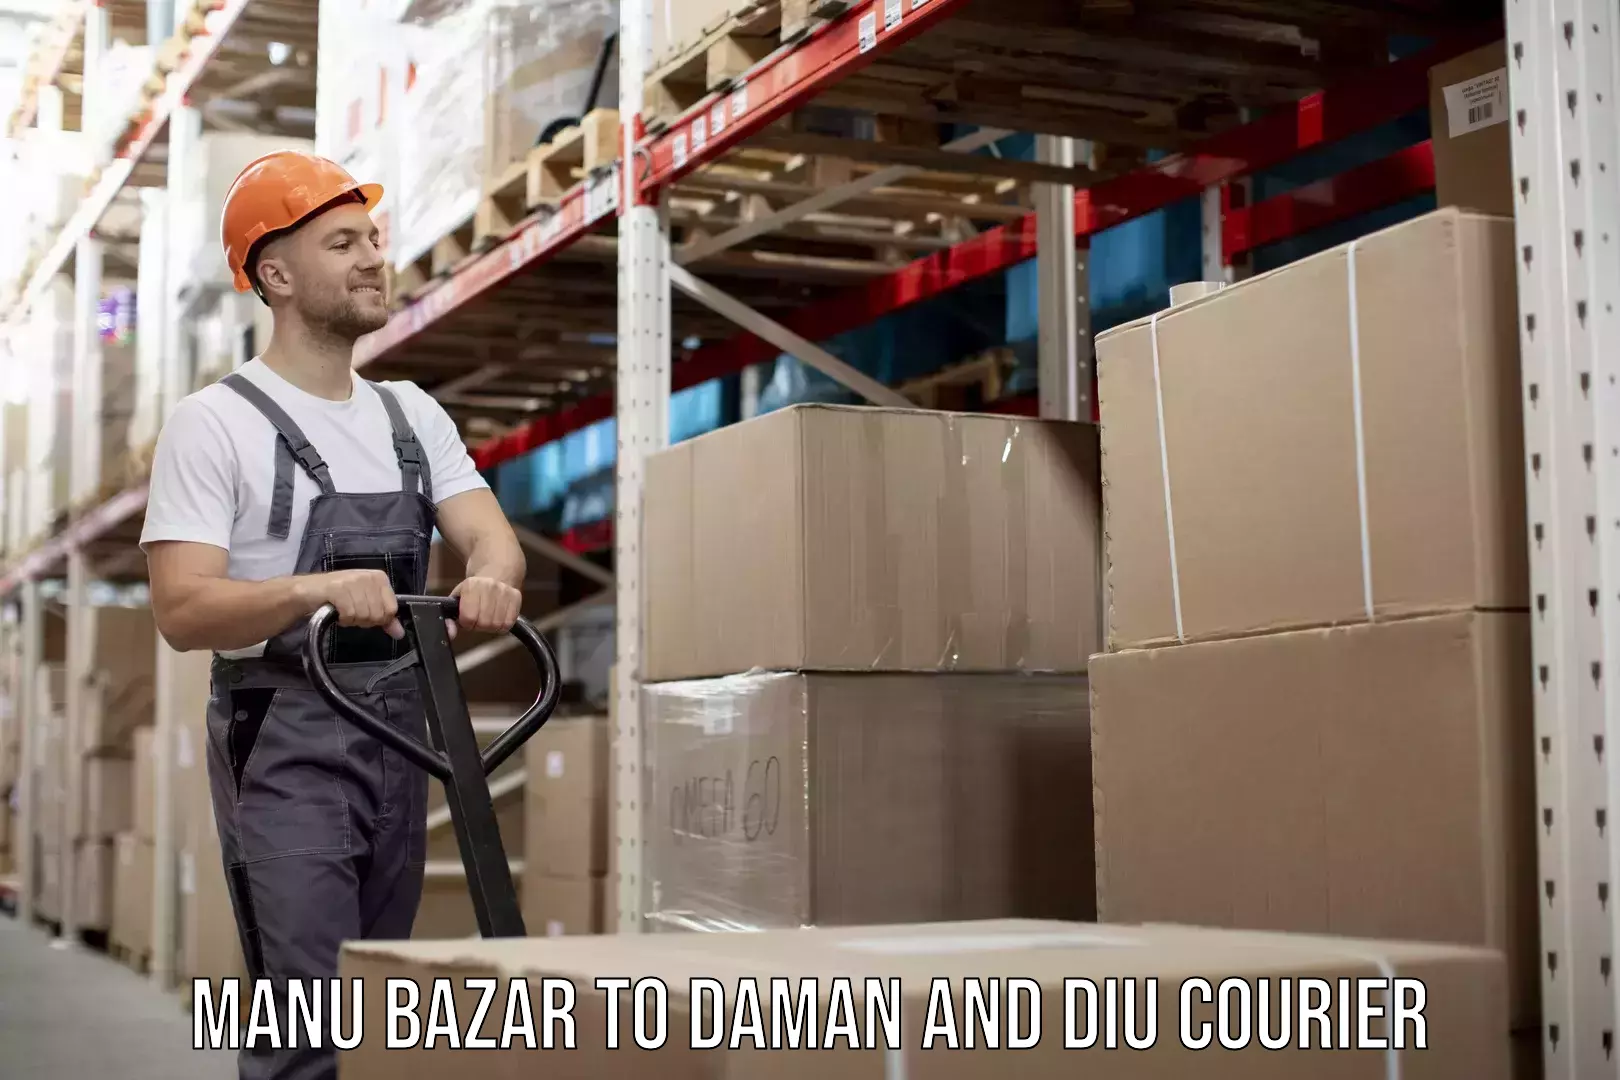 24-hour courier service Manu Bazar to Daman and Diu